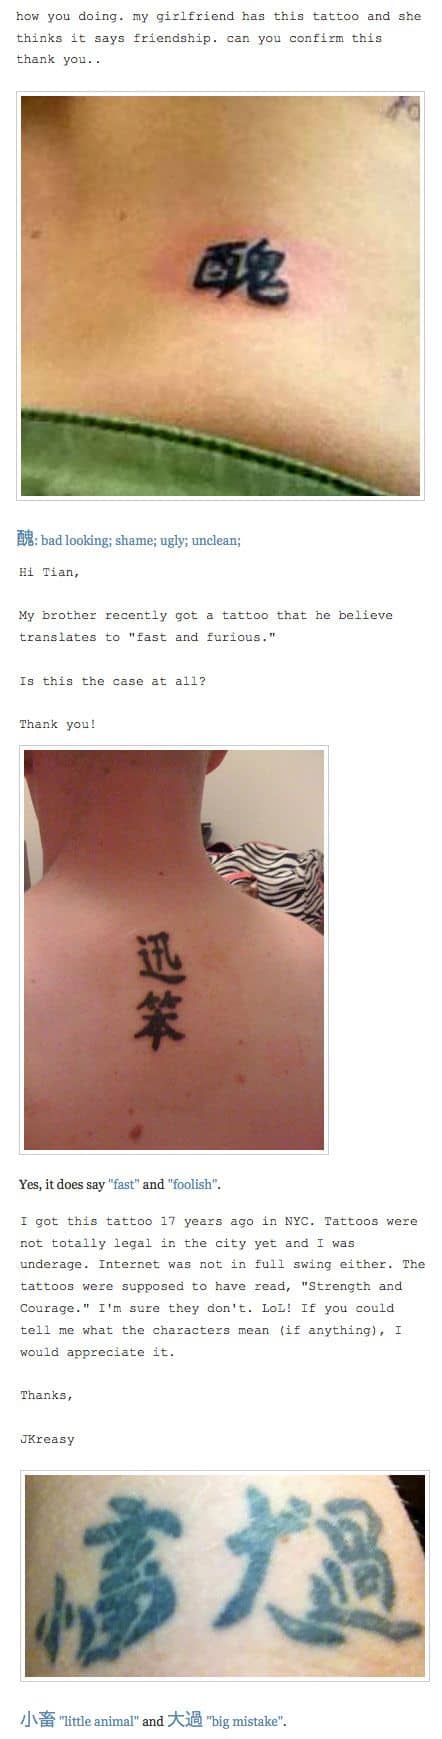 Que signifie mon tatouage: Blogger traduit les caractères chinois